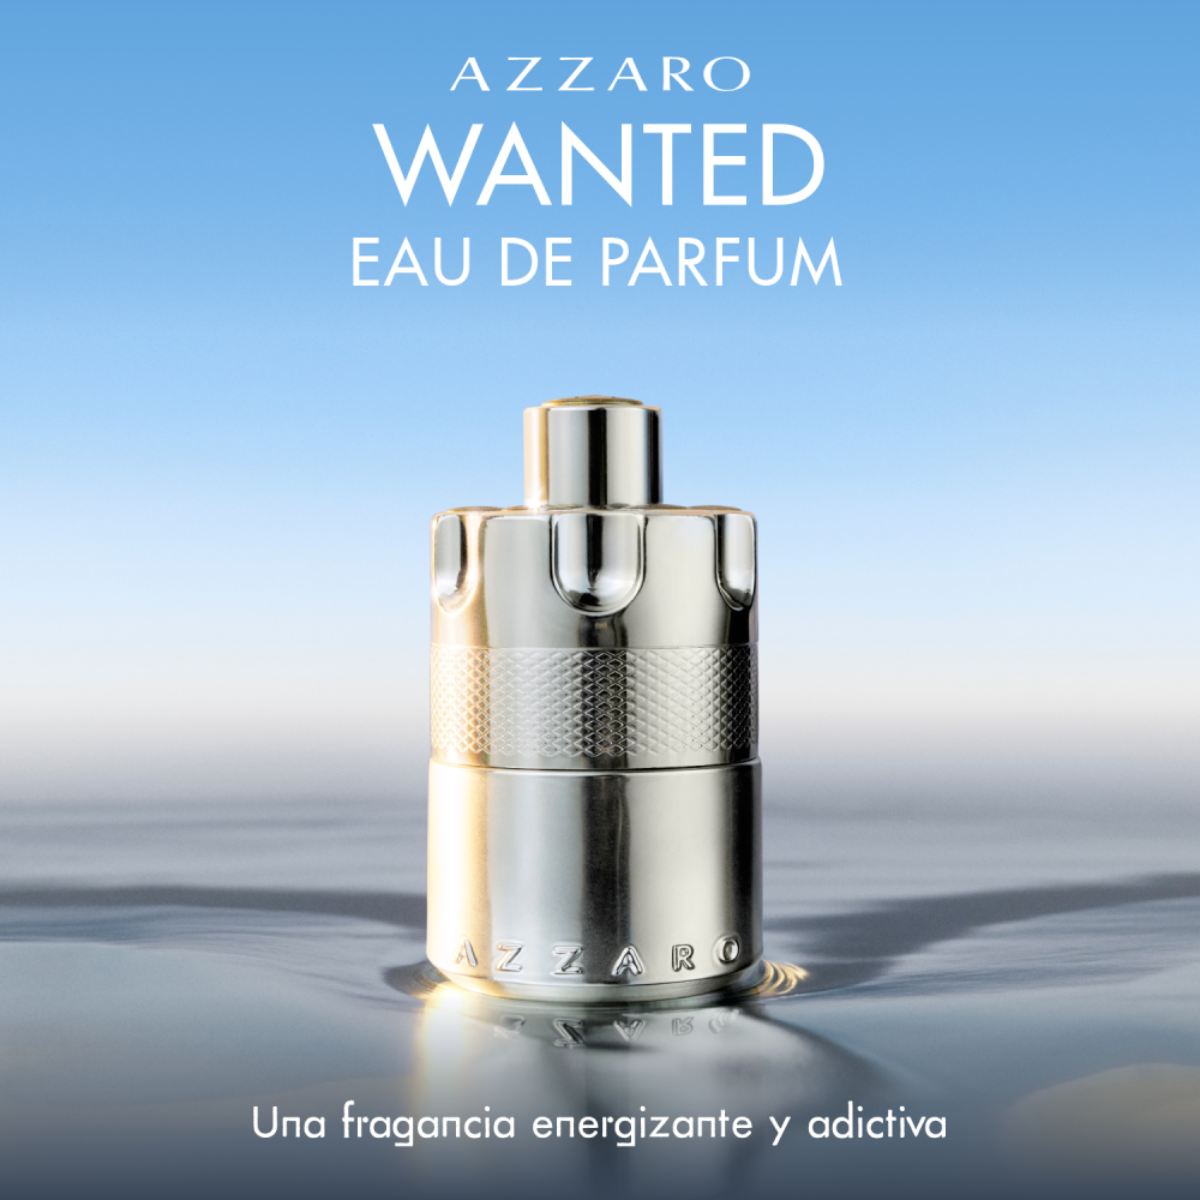 Wanted Eau de Parfum